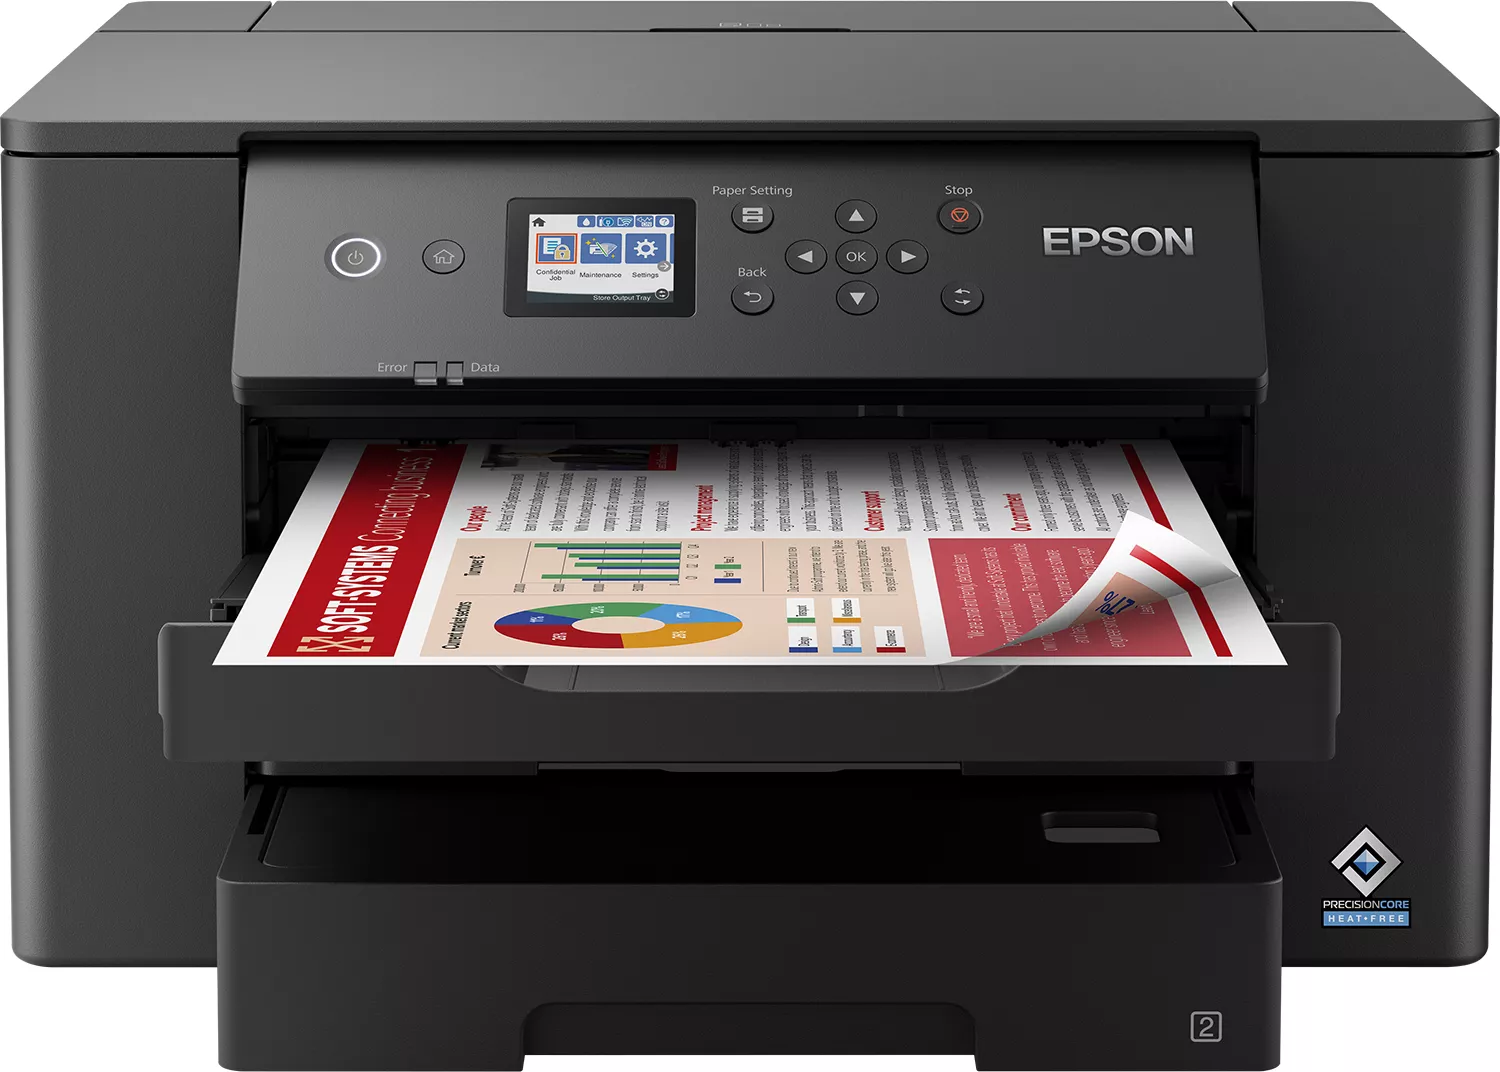 Vente EPSON WorkForce WF-7310DTW Printer colour Duplex ink-jet au meilleur prix